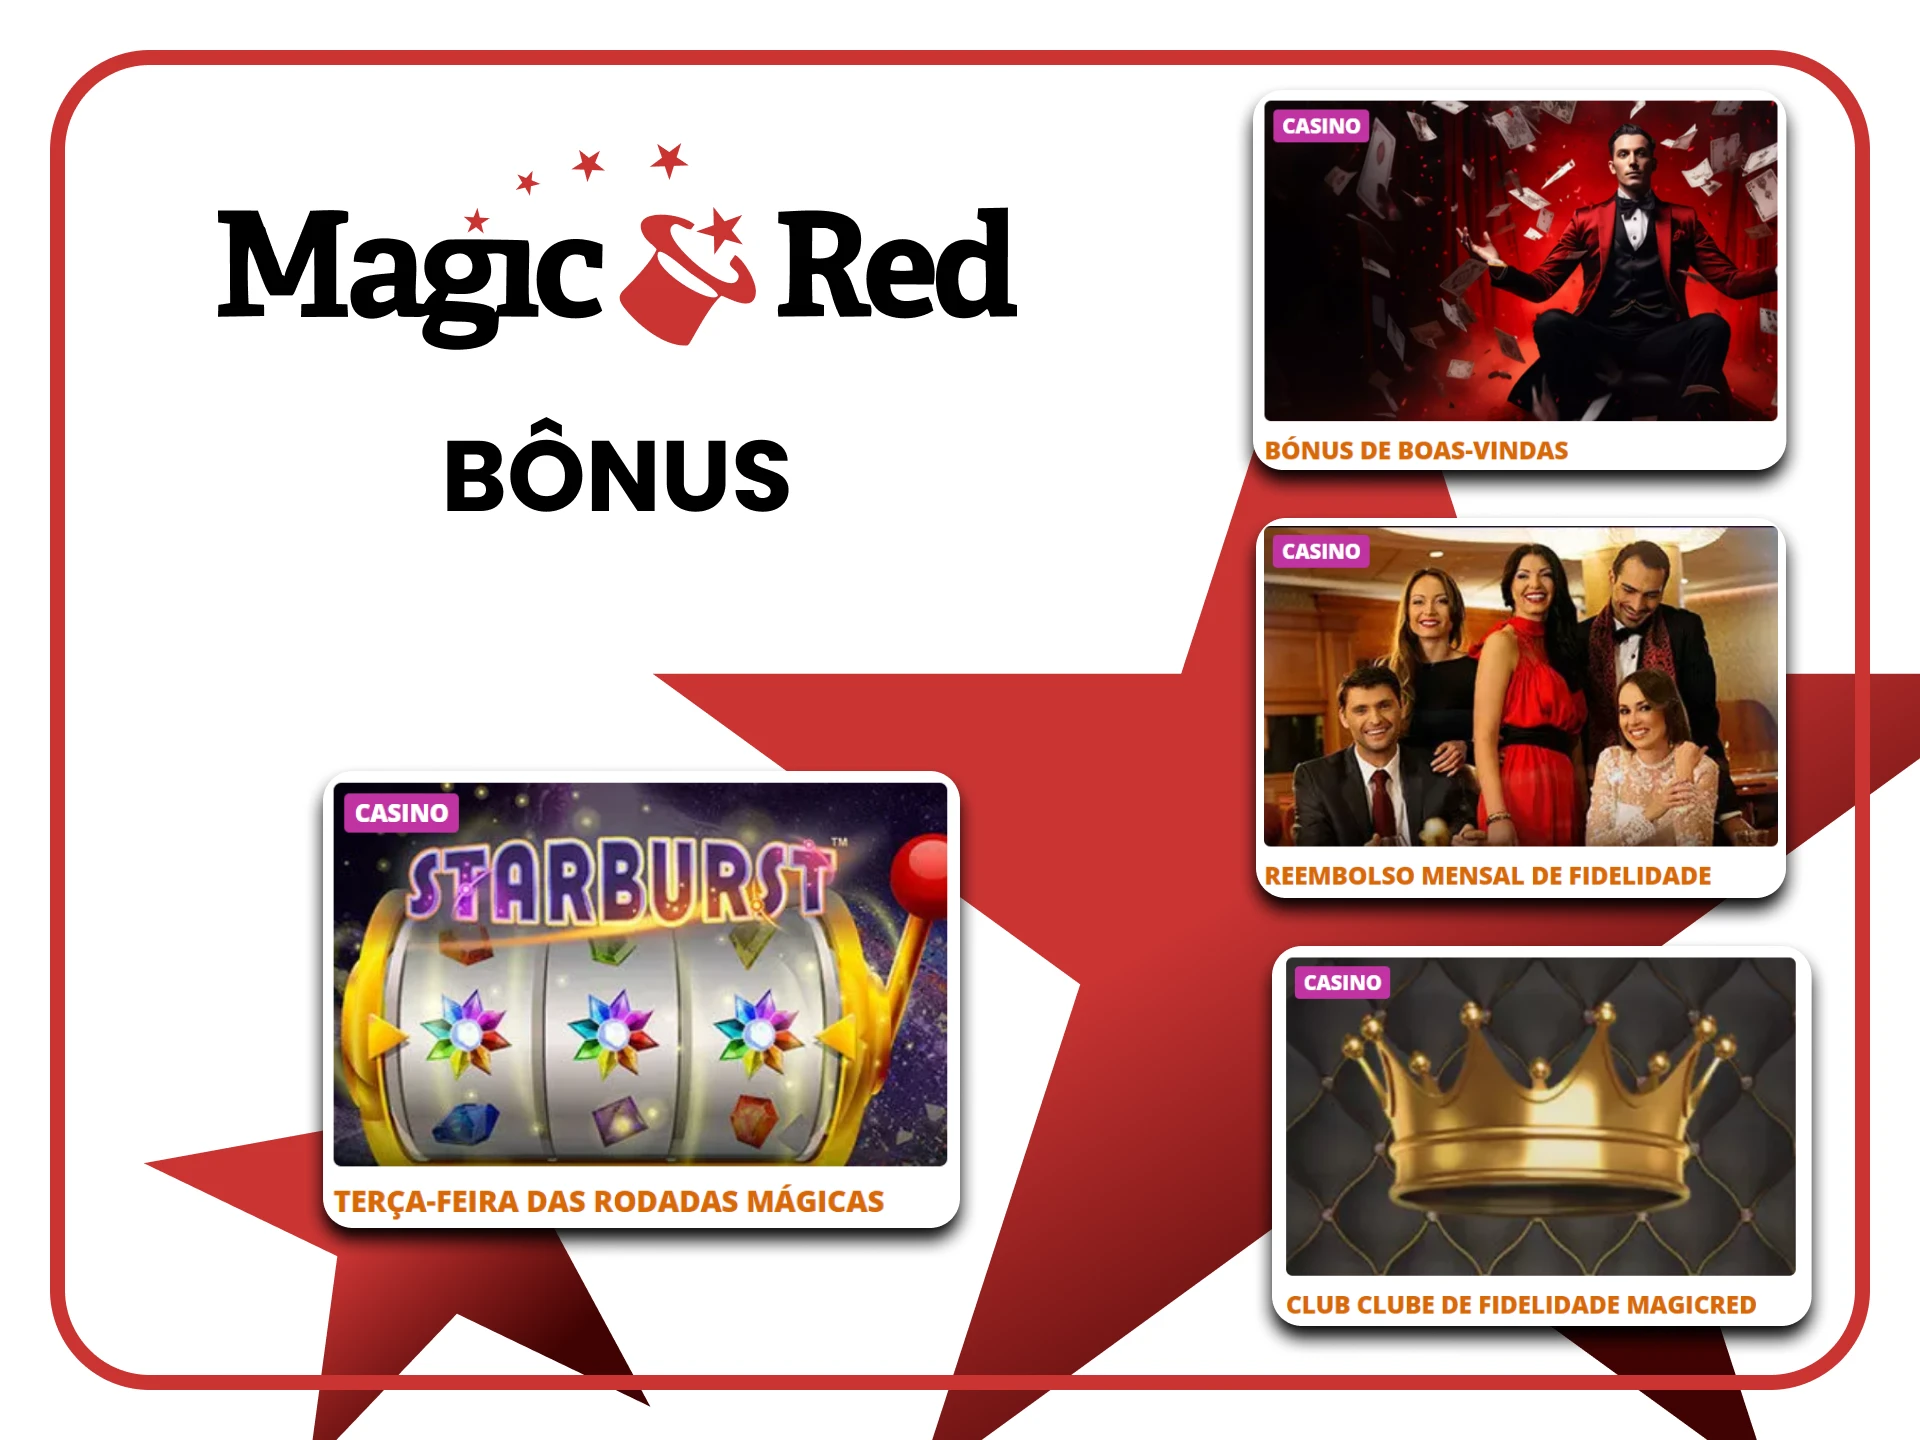 Magic Red oferece bônus para jogar caça-níqueis.